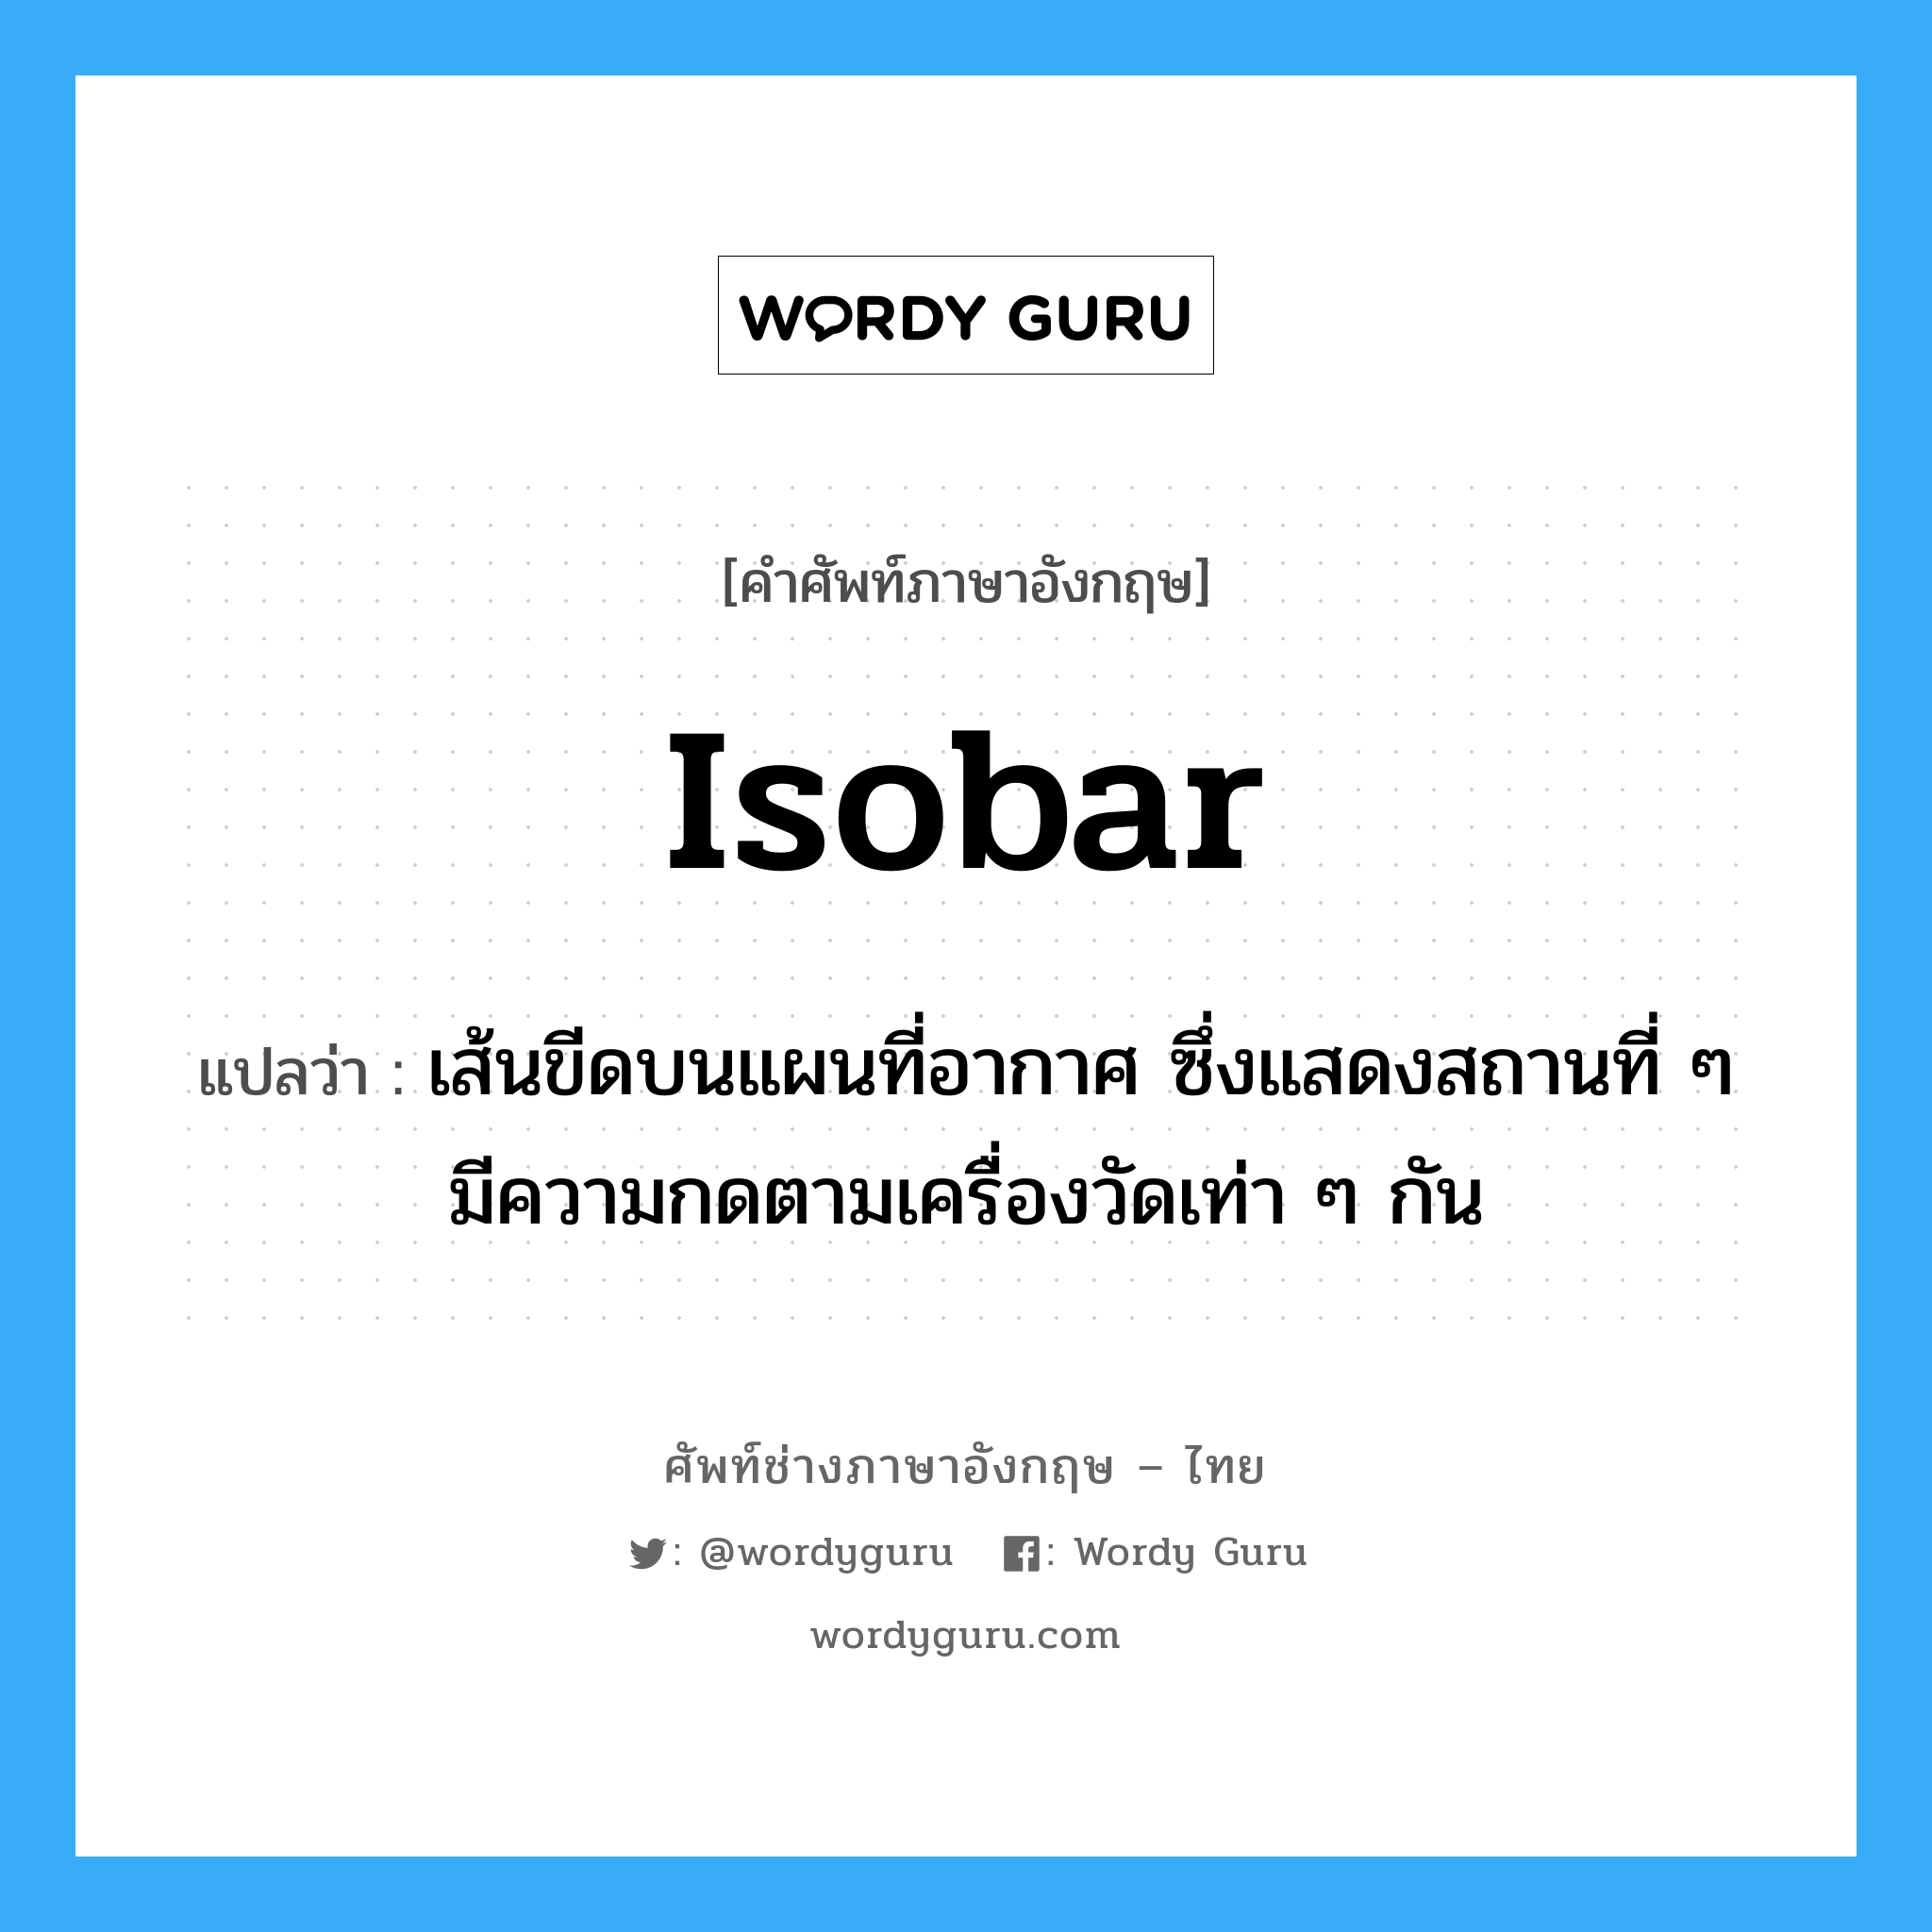 isobar แปลว่า?, คำศัพท์ช่างภาษาอังกฤษ - ไทย isobar คำศัพท์ภาษาอังกฤษ isobar แปลว่า เส้นขีดบนแผนที่อากาศ ซึ่งแสดงสถานที่ ๆ มีความกดตามเครื่องวัดเท่า ๆ กัน